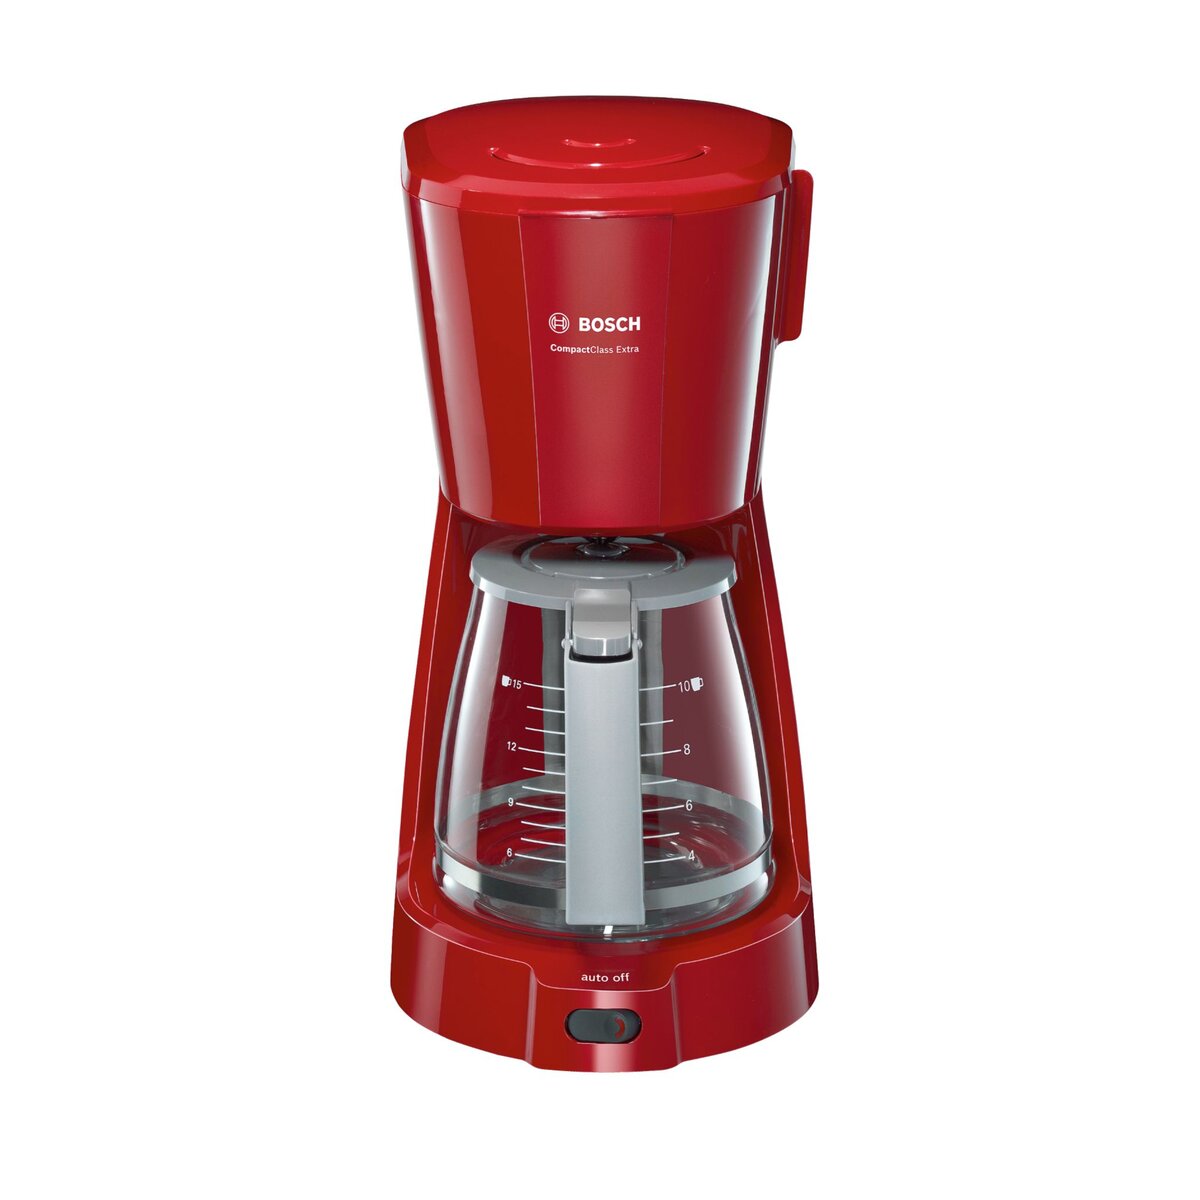 Cadeau client - Cadeau d'affaires - Machine à café rouge Bosch